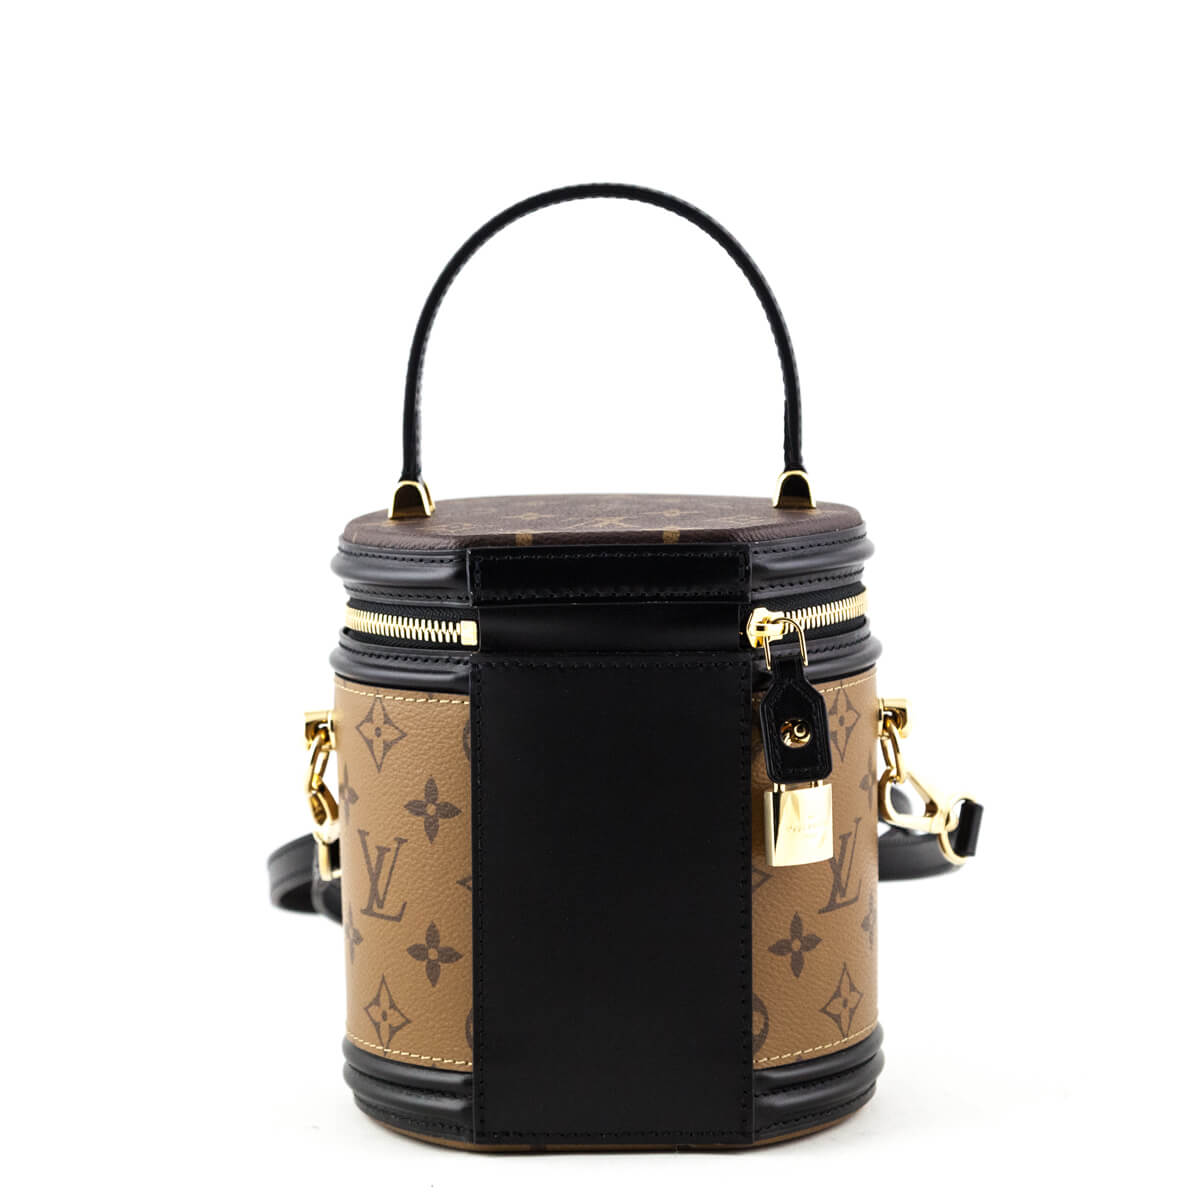 Louis Vuitton Cannes monogram reverse bag review. Cutest handbag